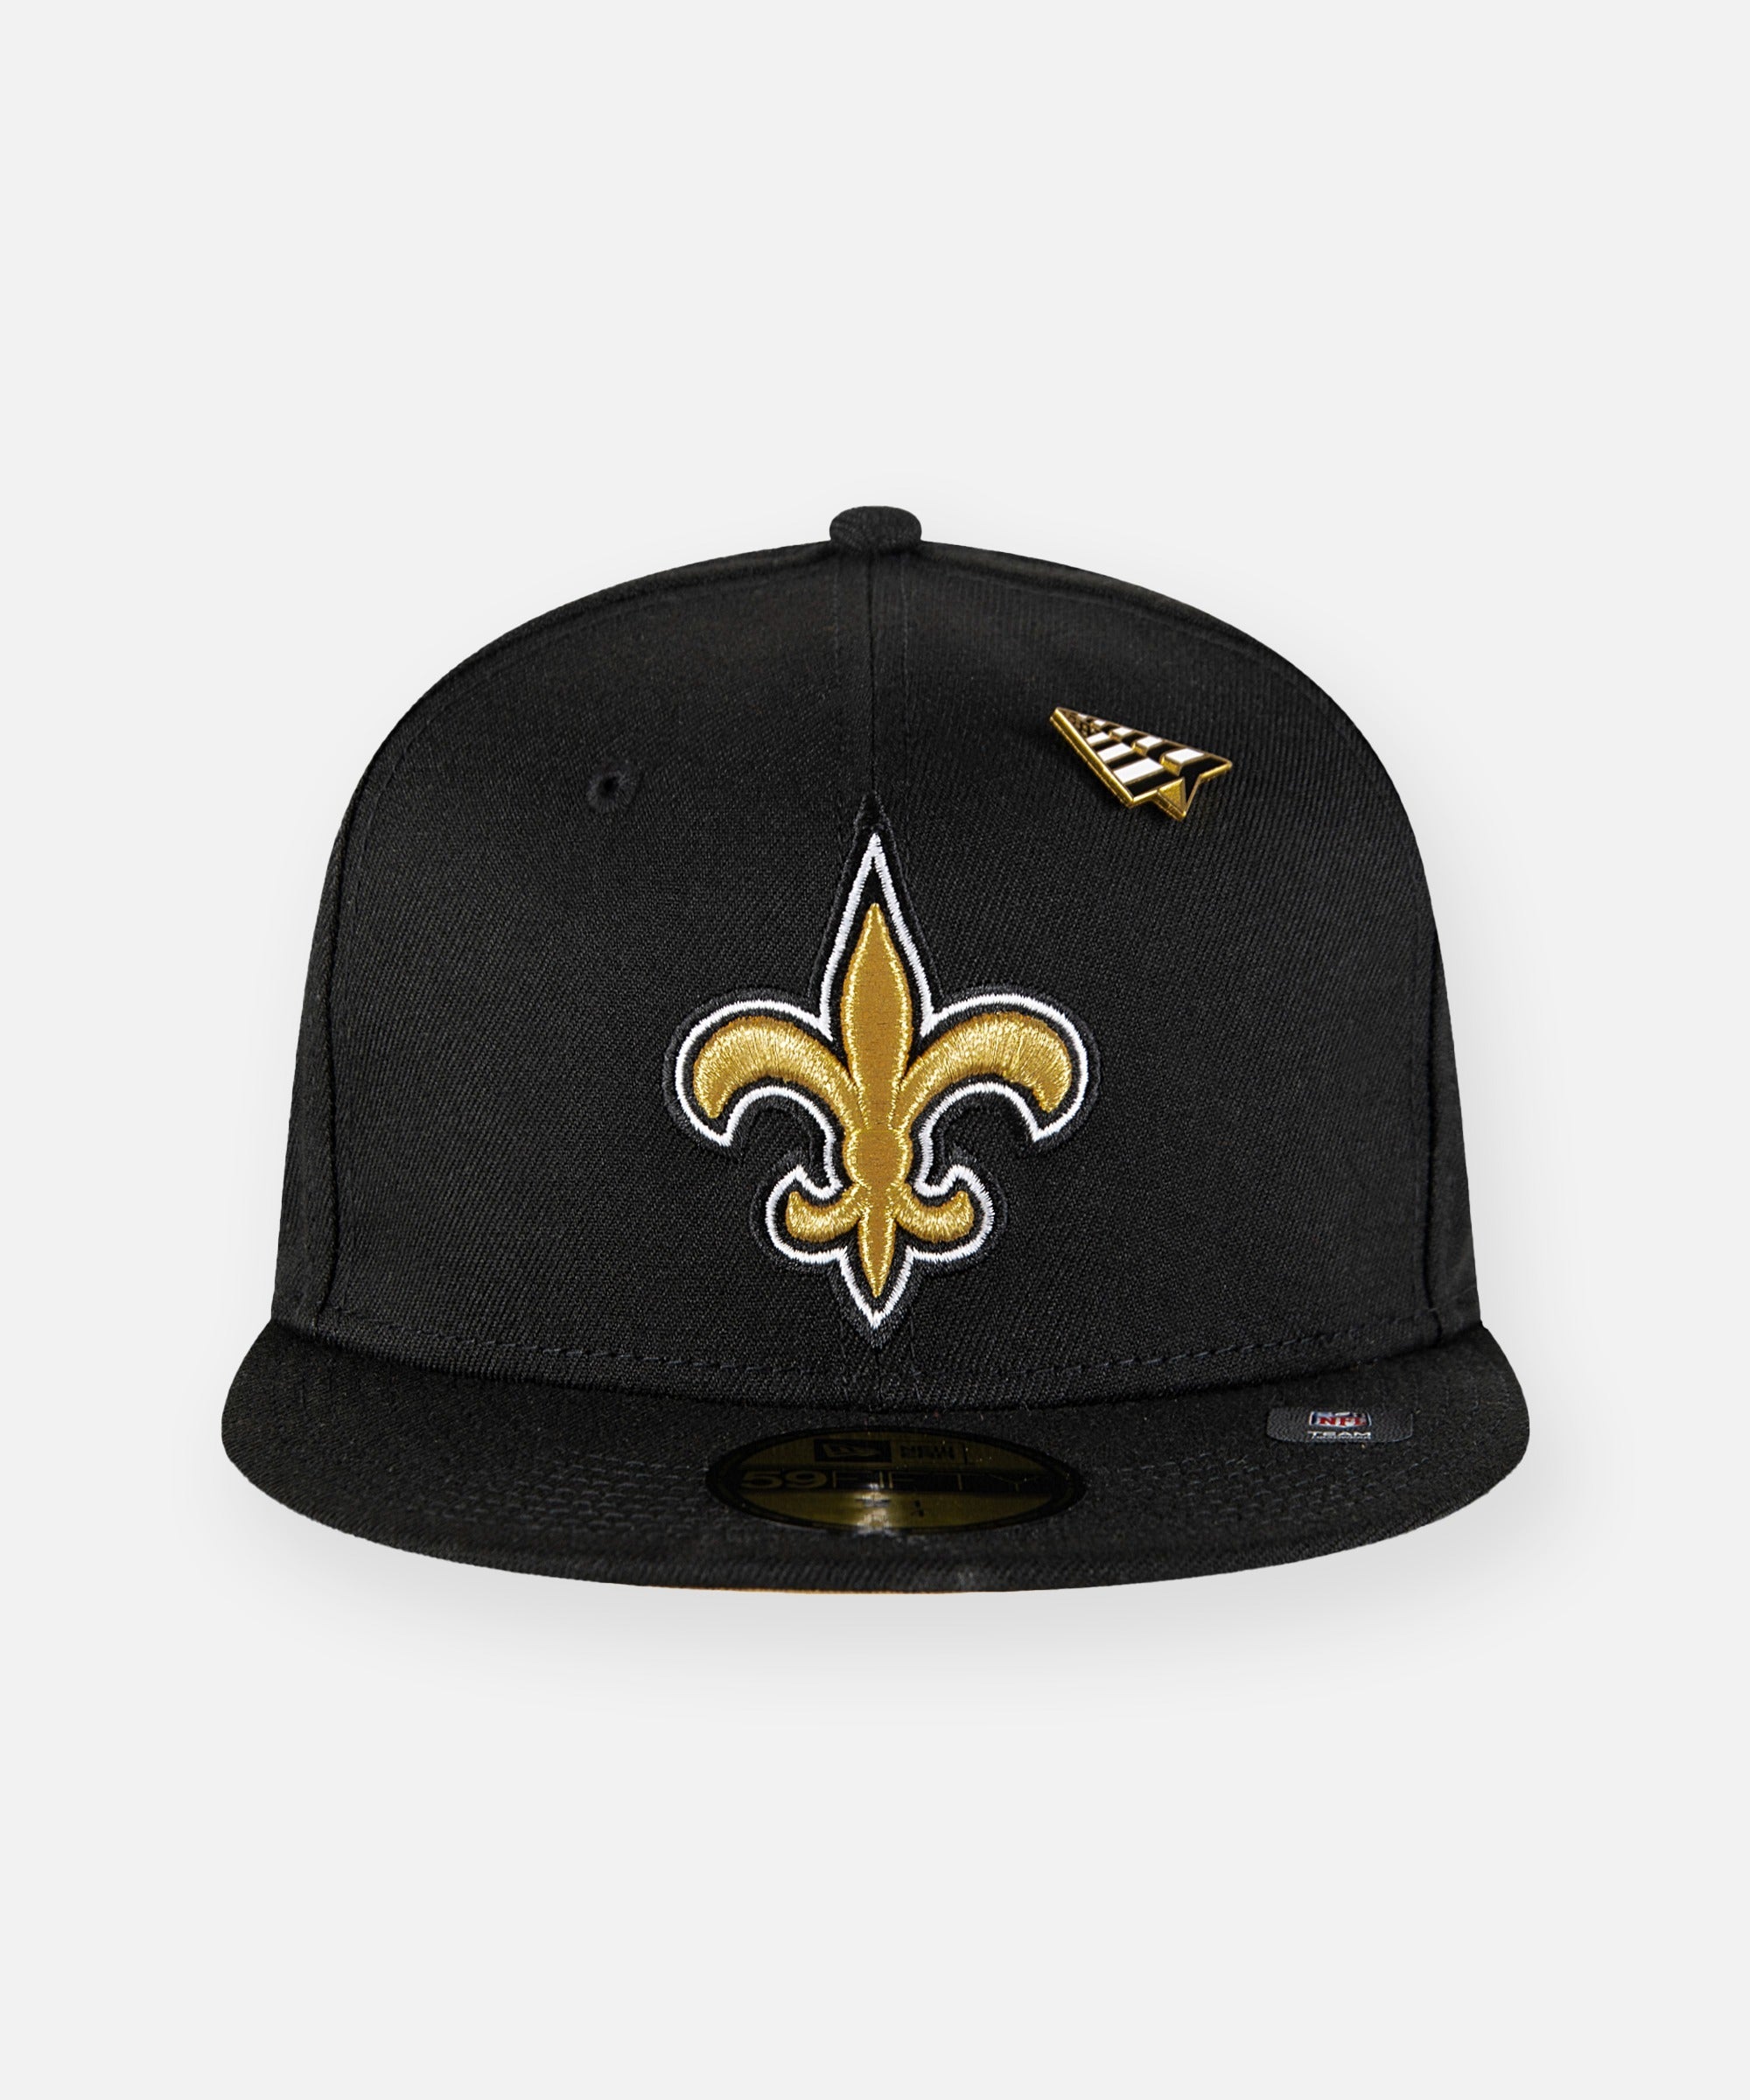 saints fitted cap